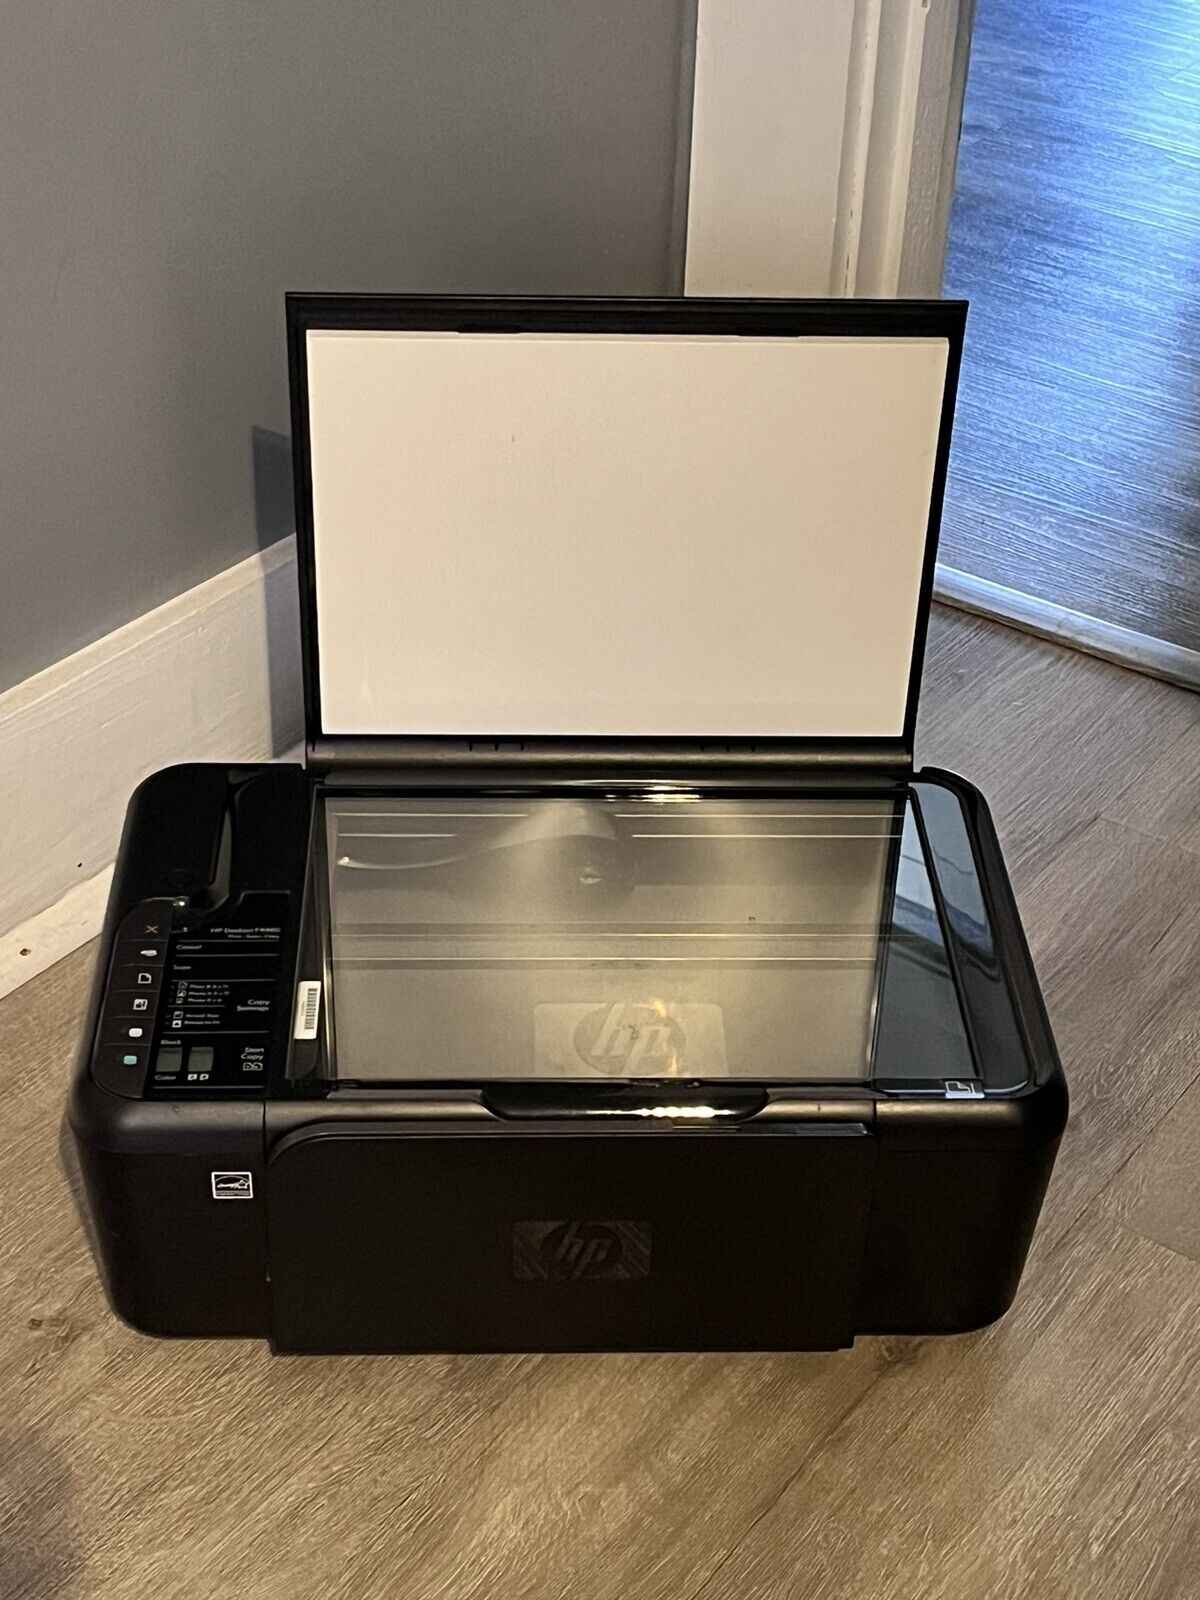 HP Deskjet F4480 All-In-One Inkjet Printer